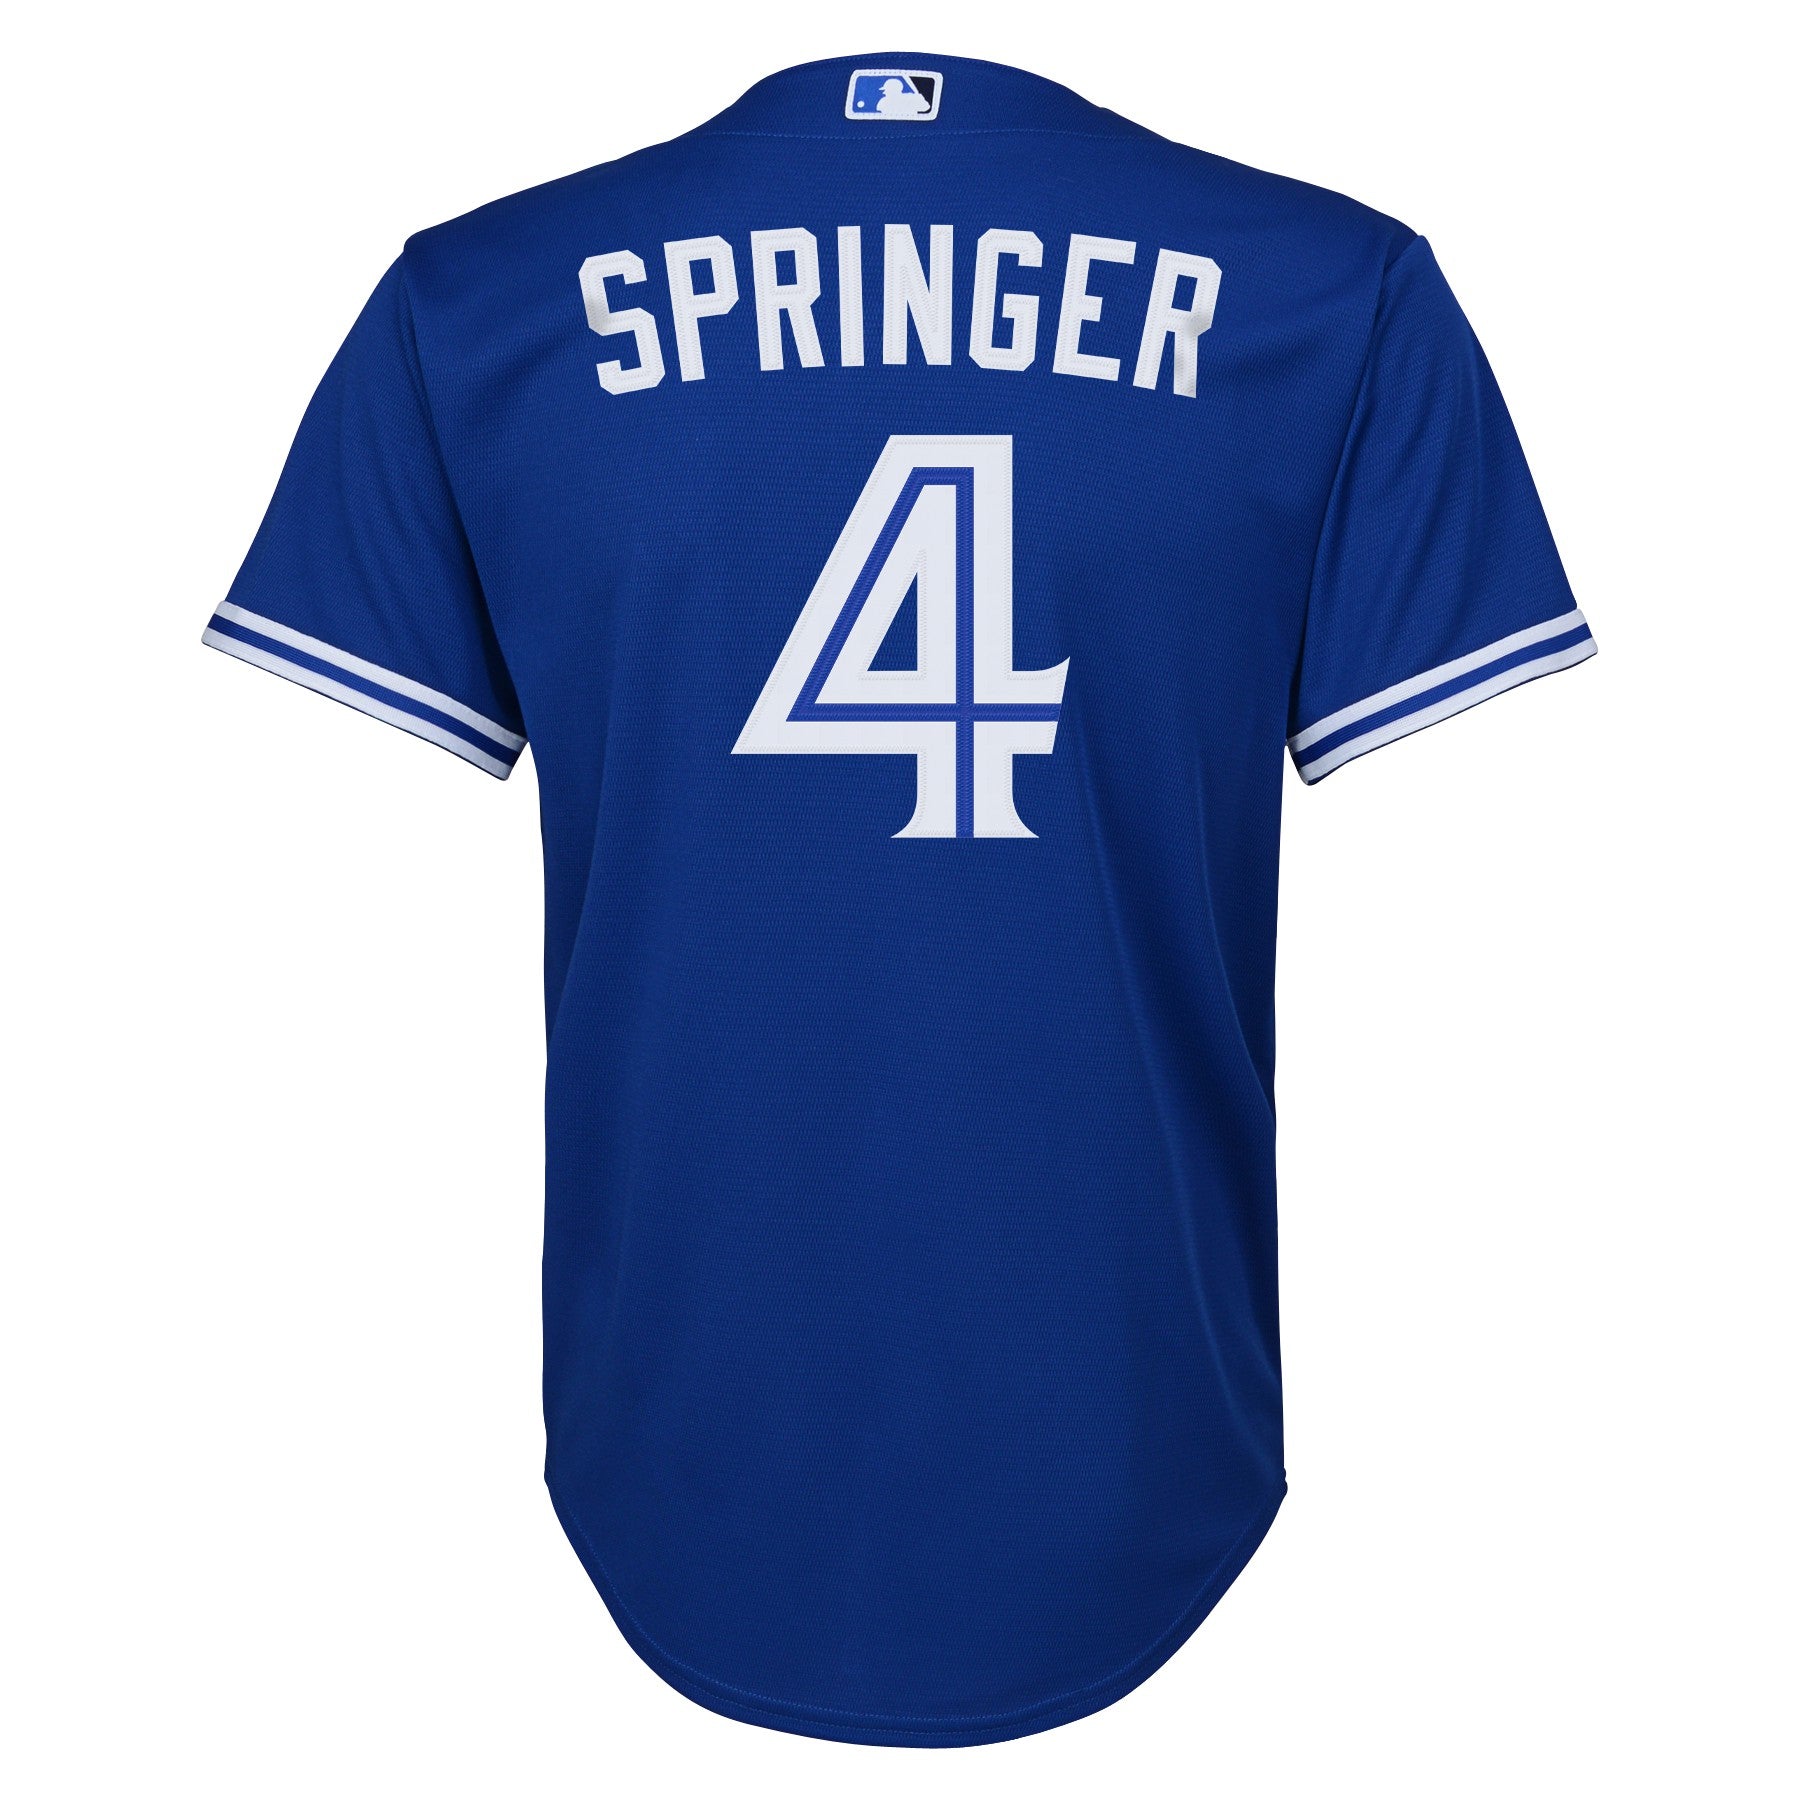 George Springer Jerseys, George Springer Shirt, George Springer Gear &  Merchandise